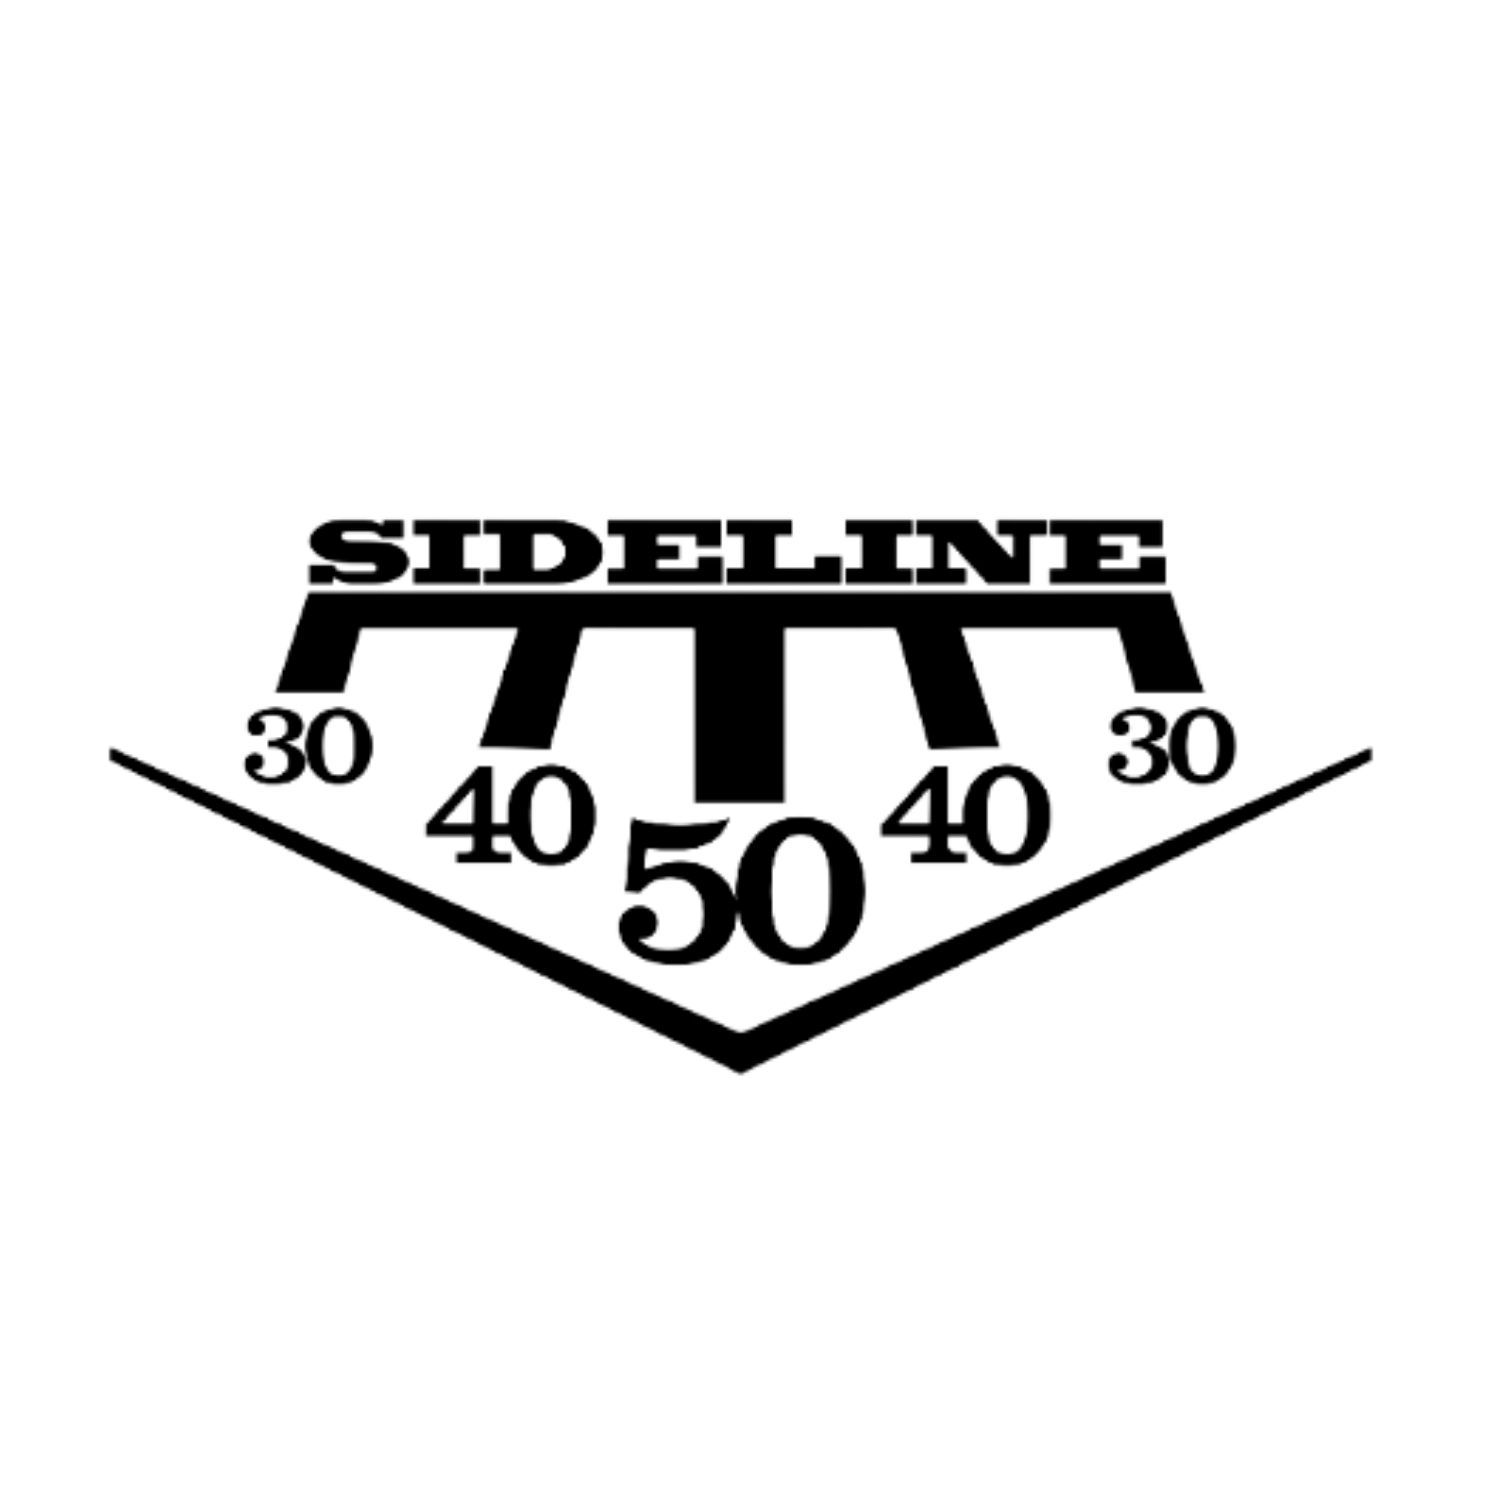 Black Sideline Logo Transparent.png